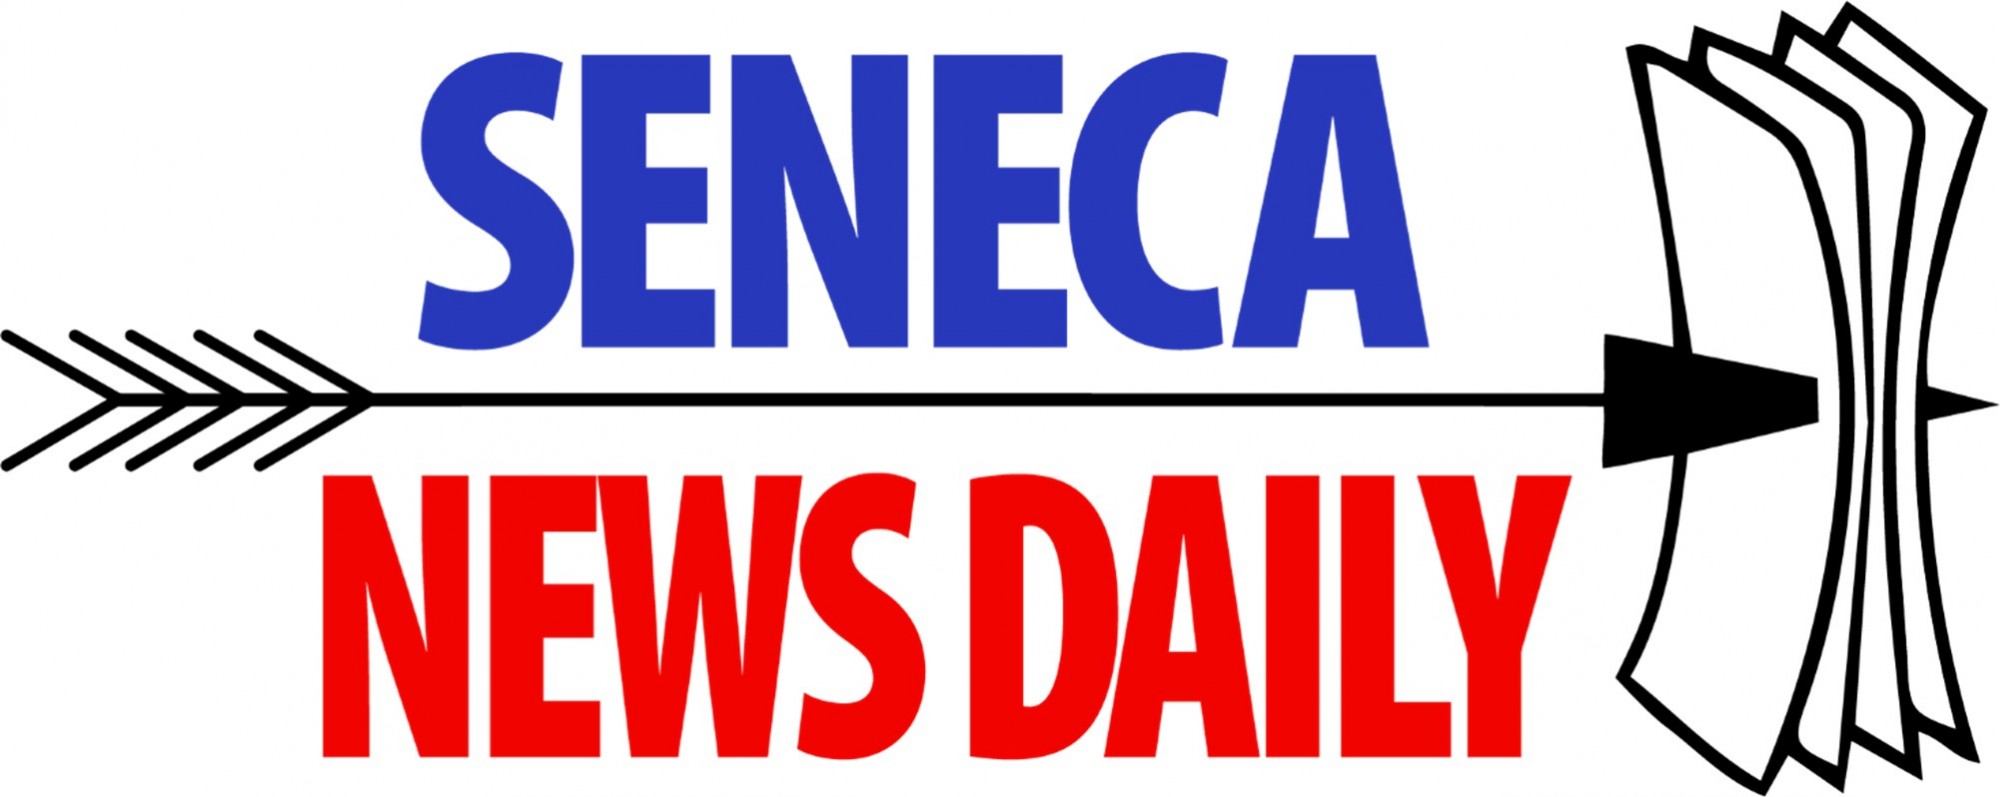 Seneca News Daily